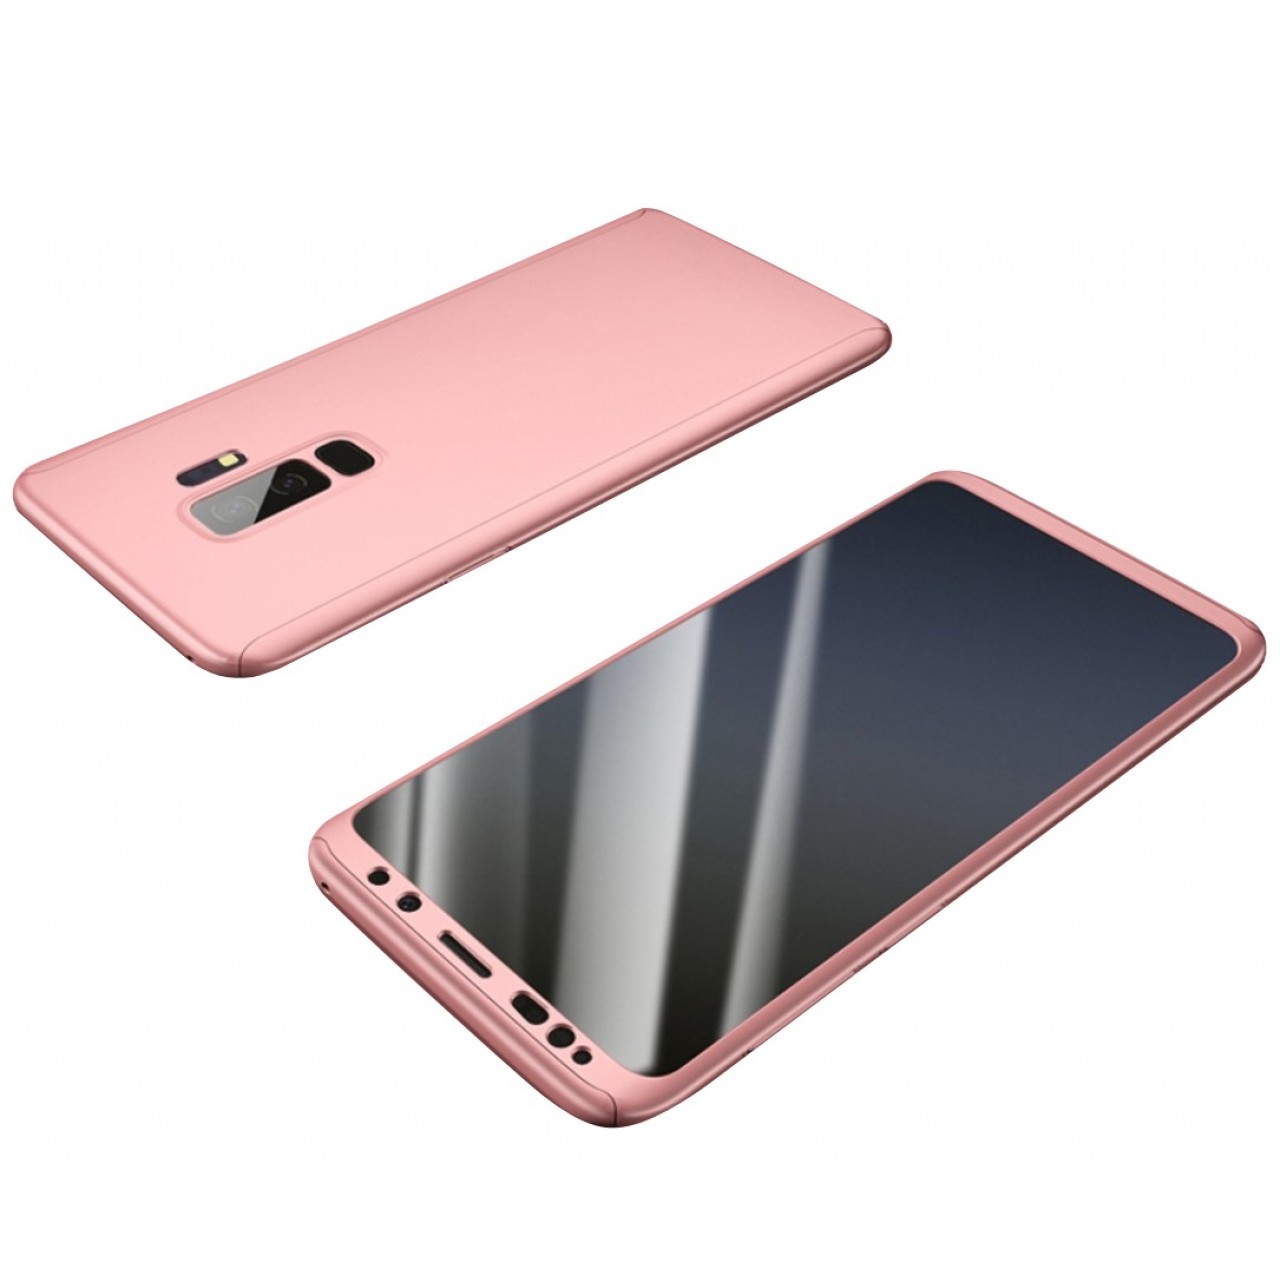 Θήκη Samsung Galaxy S9 (G960F) Hybrid 360 Full body + Μεμβράνη Προστασίας Οθόνης - 3814 - Ροζ - OEM